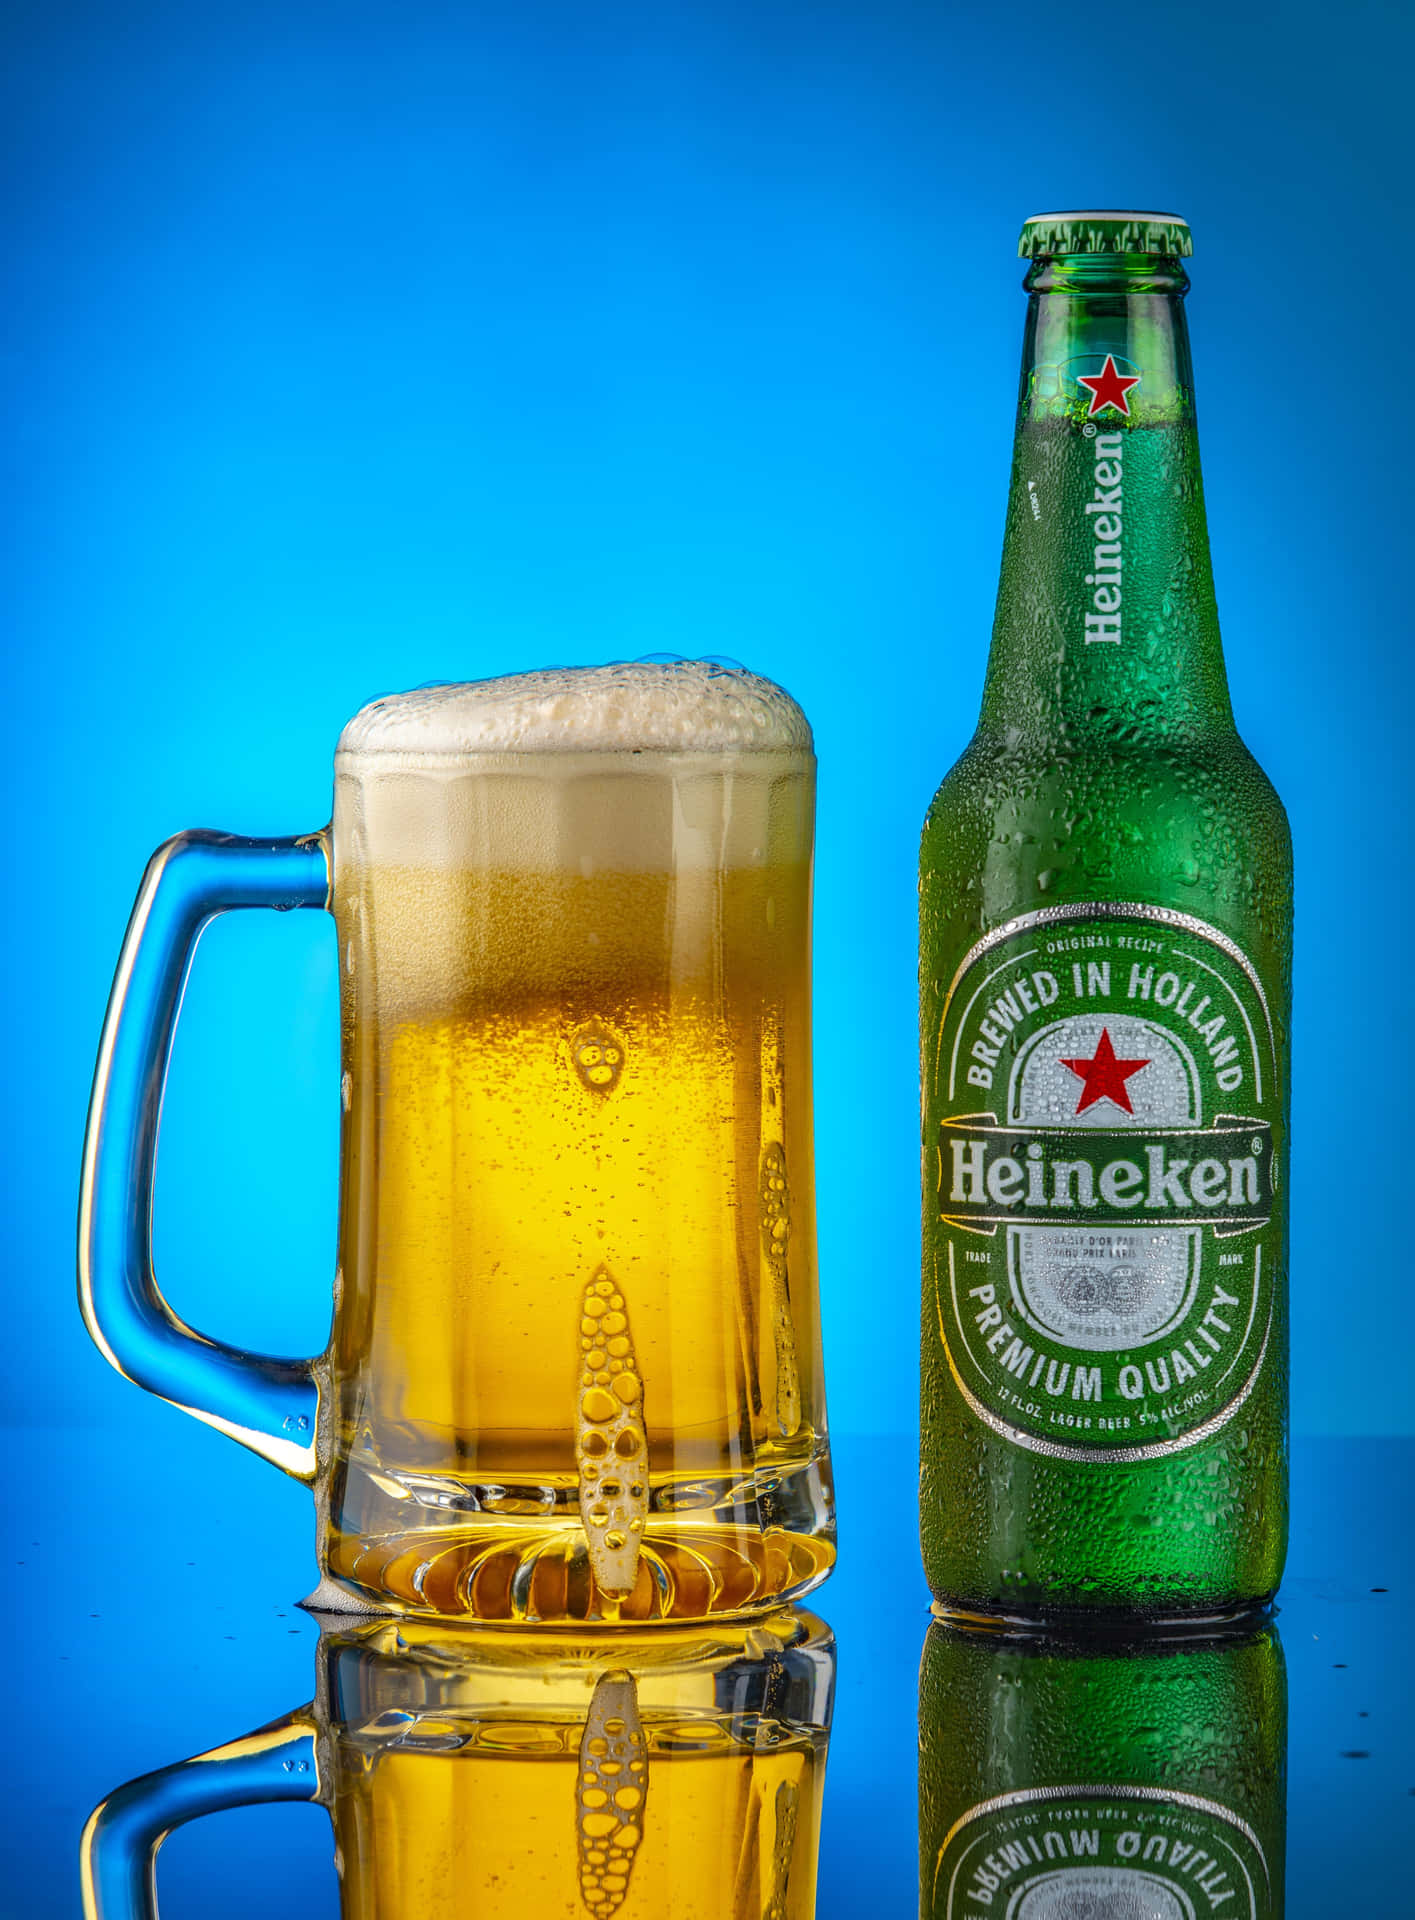 Refreshing Heineken beer bottles in a close-up view